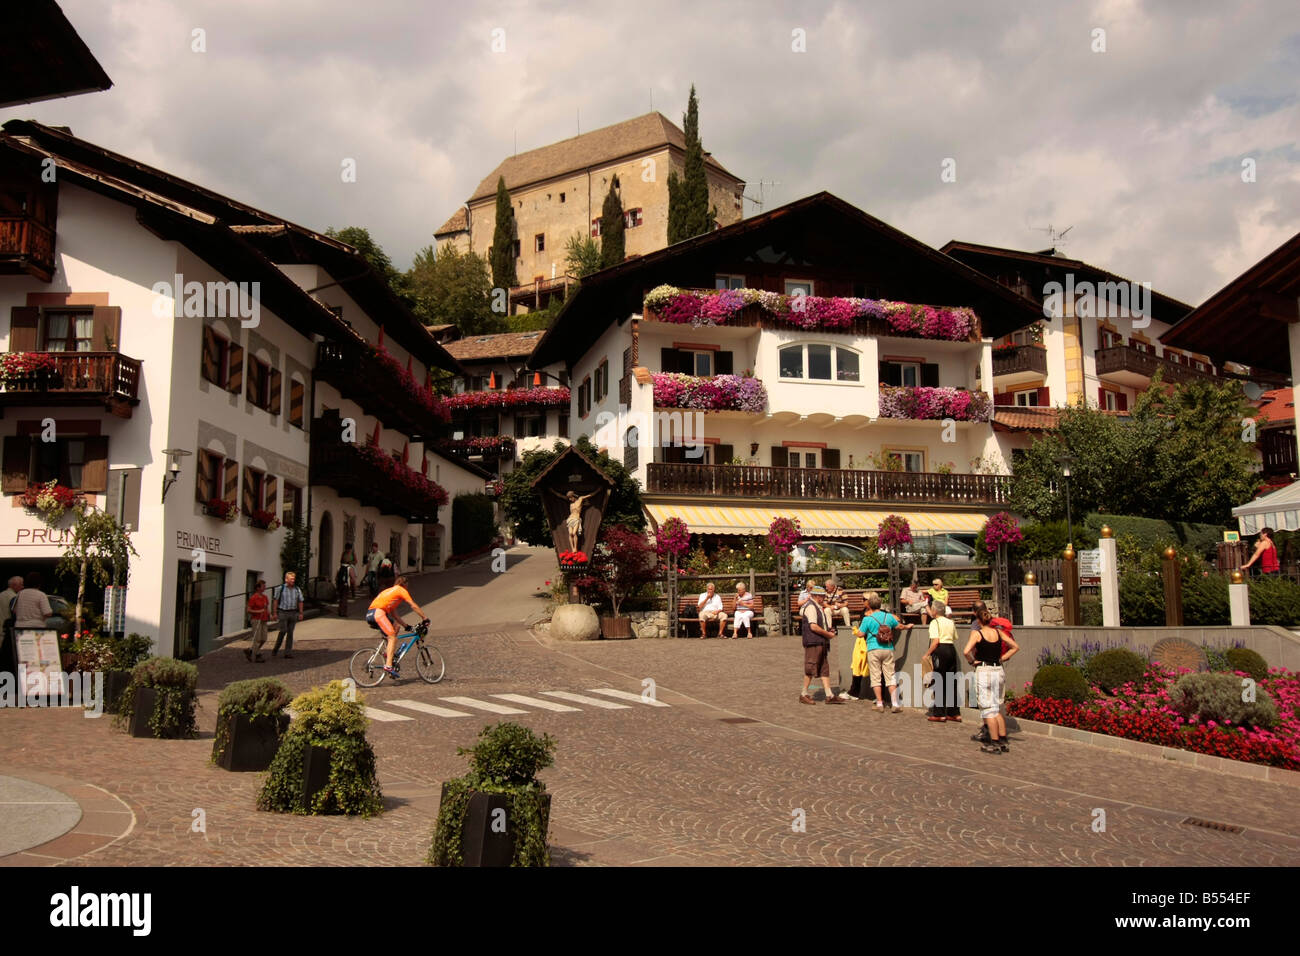 Château et centre de Schenna près de Merano Italie Tyrol du Sud Banque D'Images